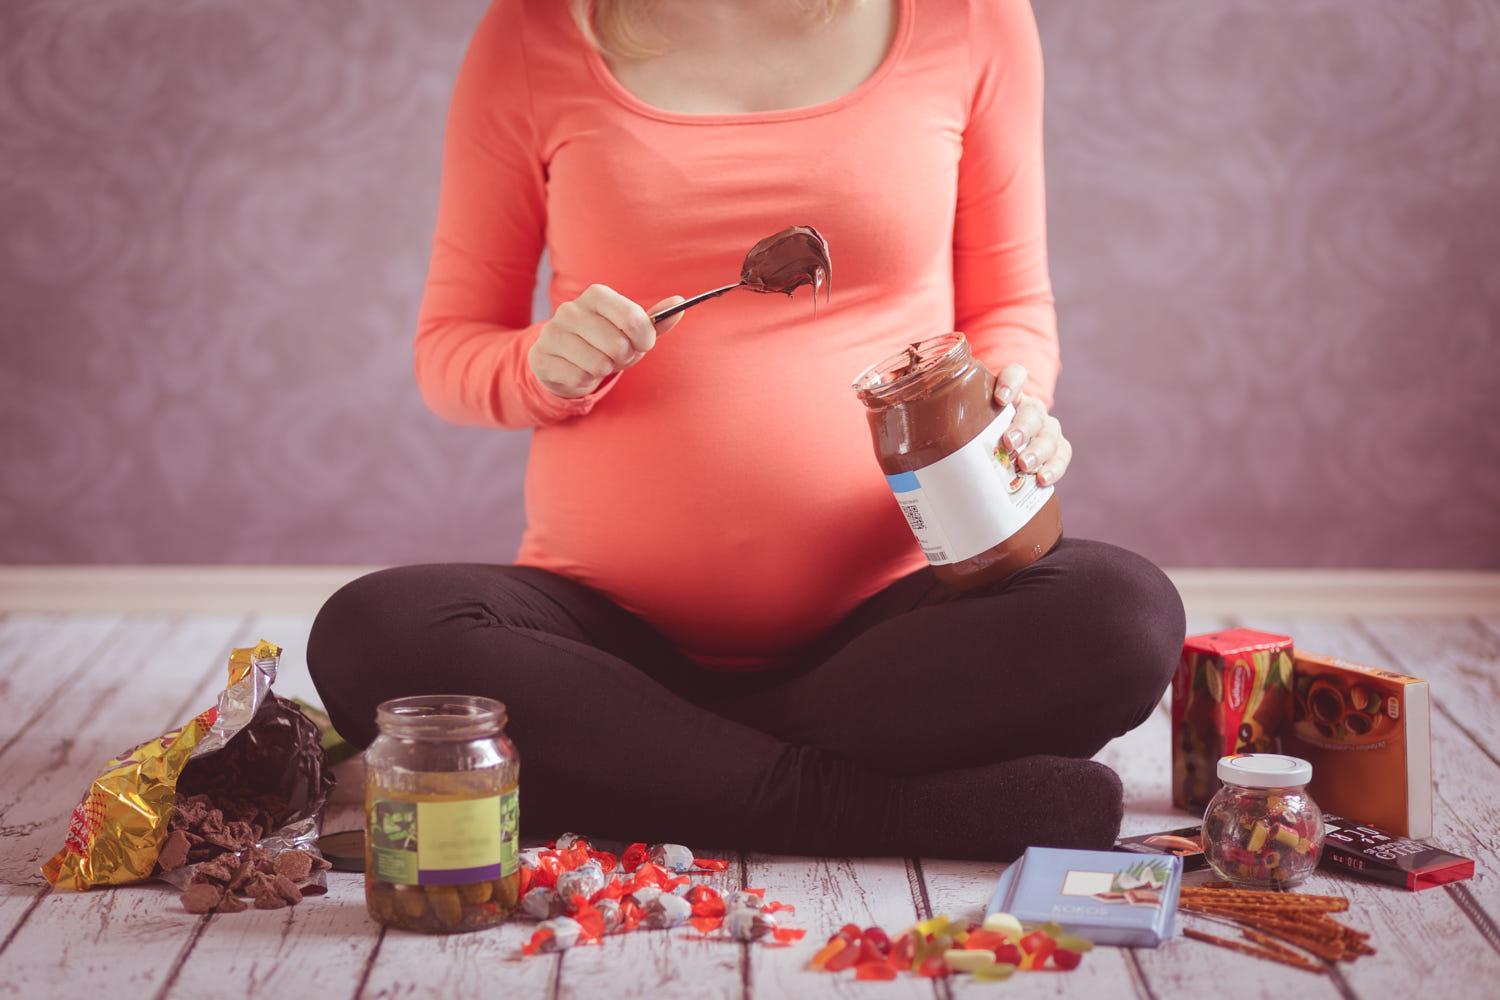 10 неприятных фактов о беременности, про которые не принято говорить